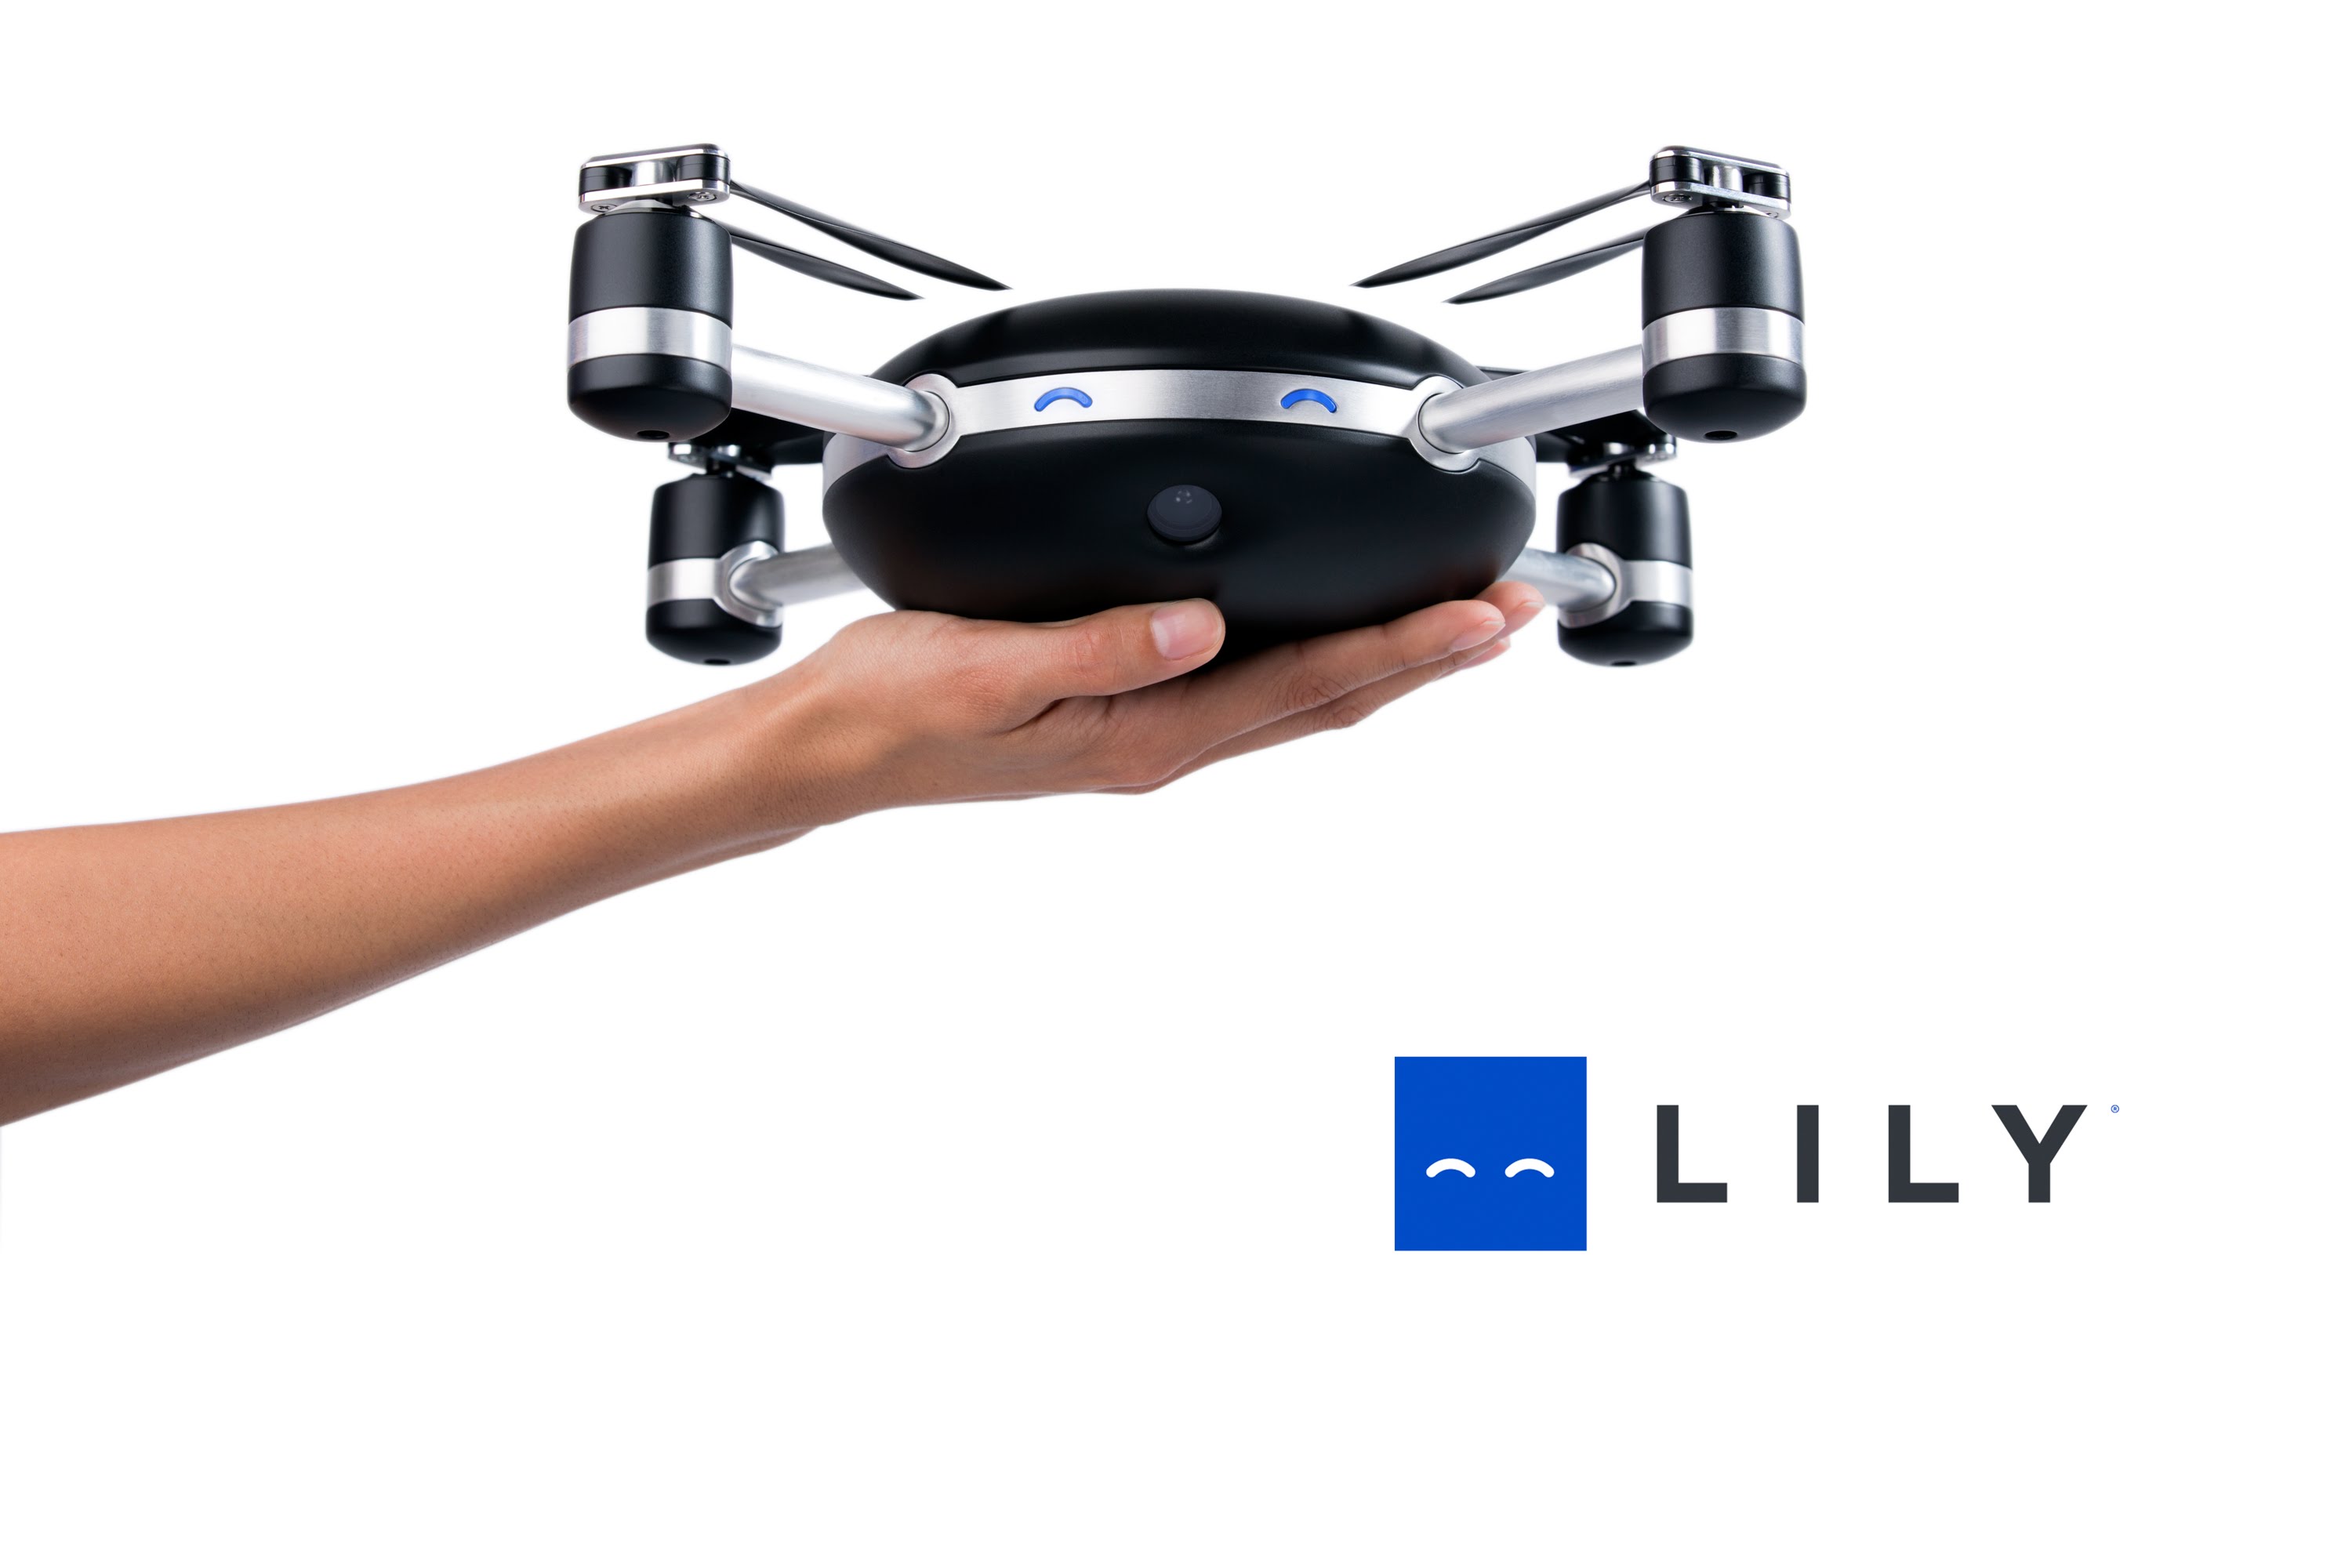 Lily un drone que te sigue